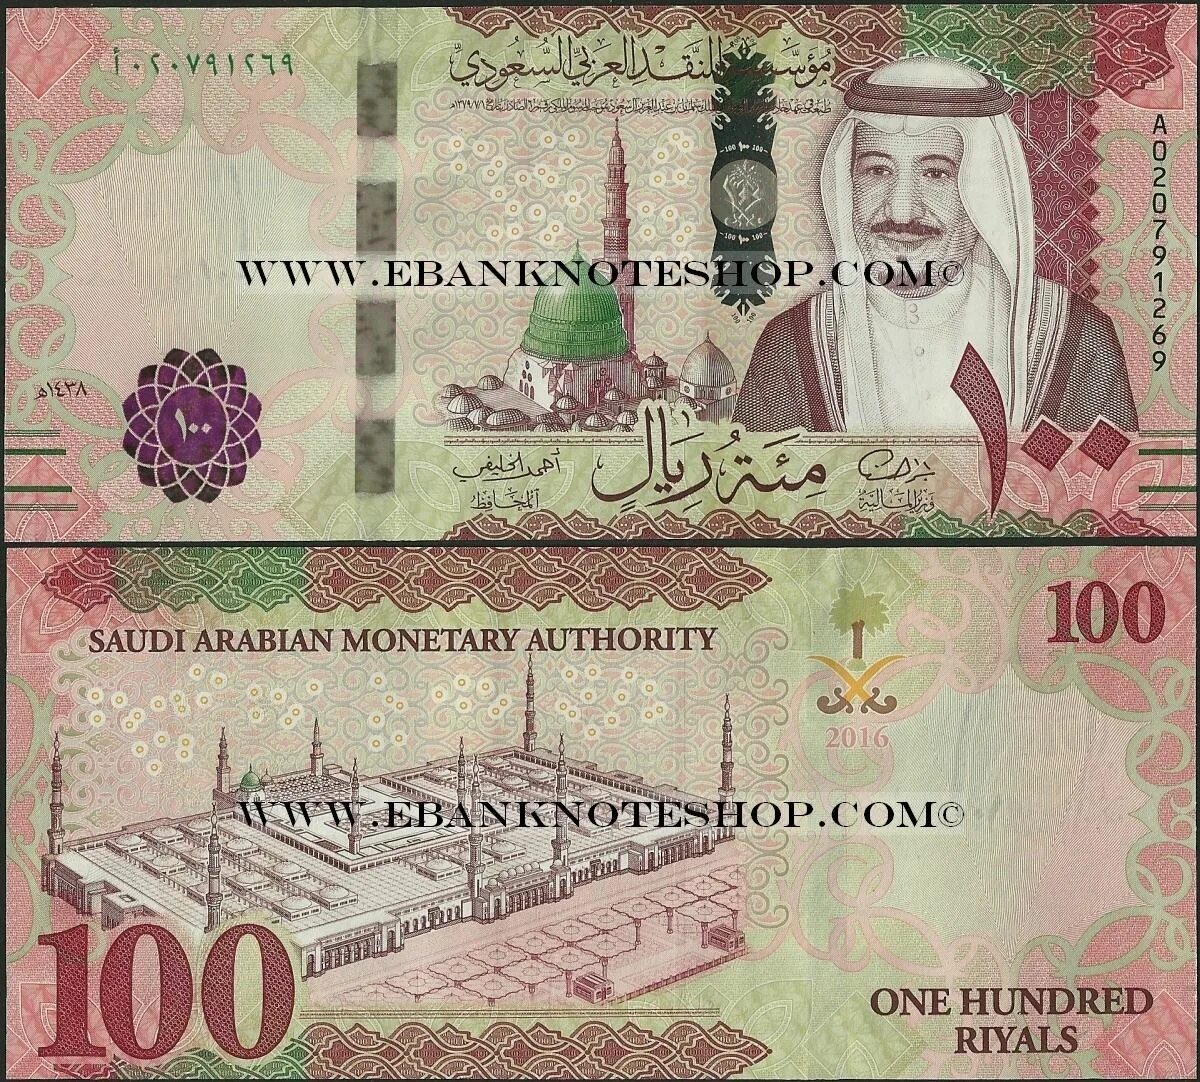 Валюта Сауд Аравия. Купюры Саудовской Аравии. Саудовский риал 100. Арабские купюры. Реал саудовской аравии к рублю